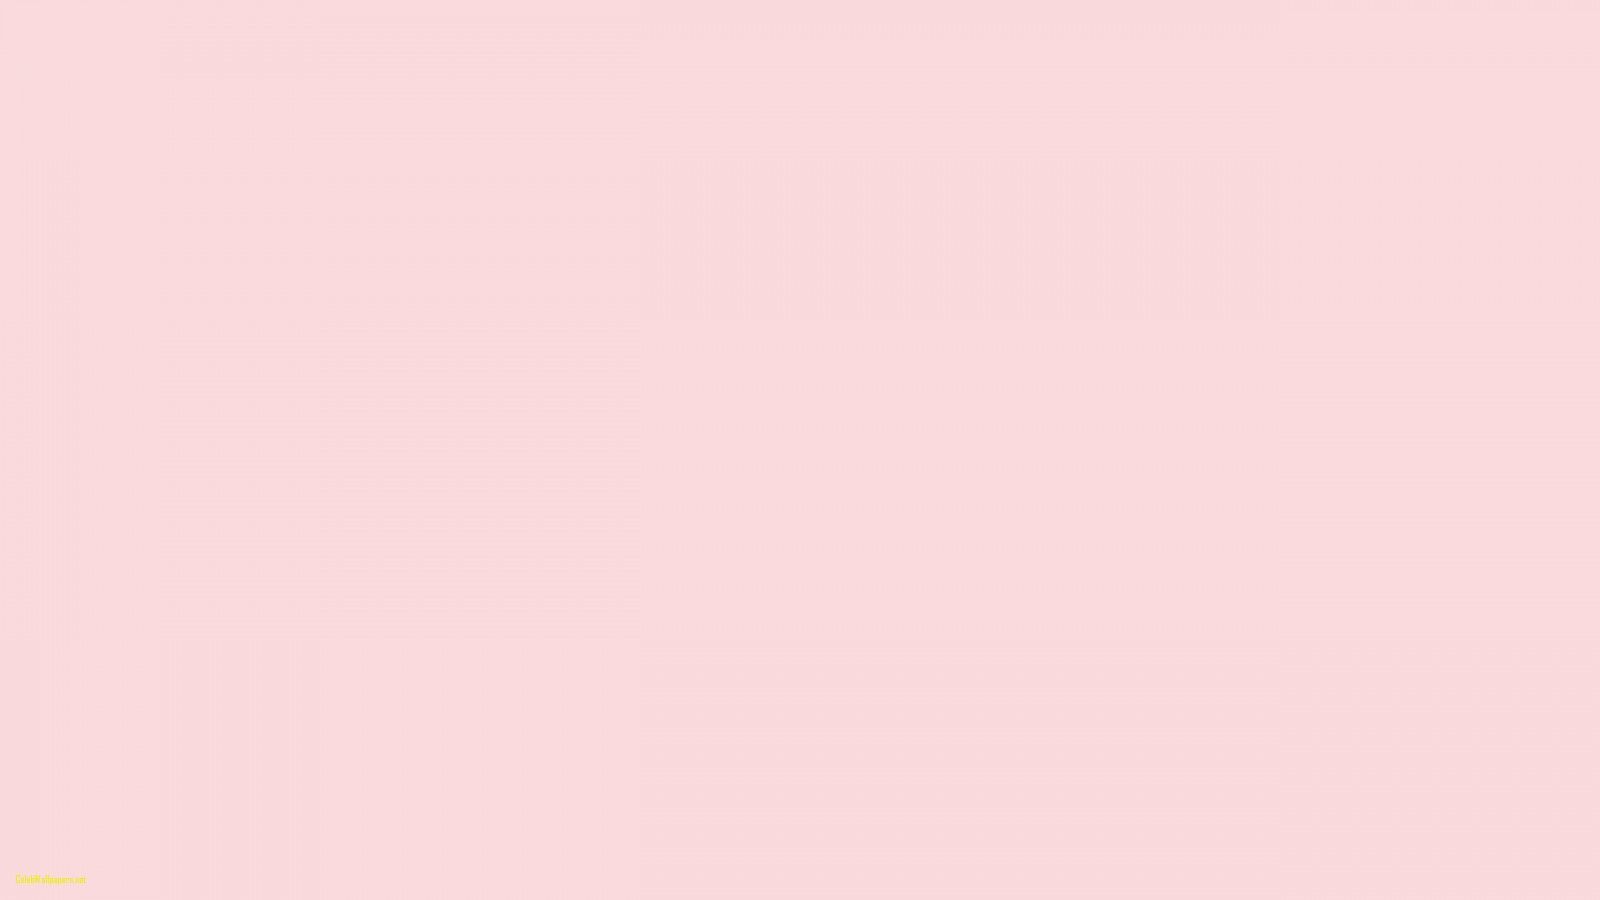 Nếu như bạn đang tìm kiếm những hình nền dễ thương và nữ tính thì bức ảnh về hình nền màu hồng nhạt nhất định sẽ là một lựa chọn tuyệt vời cho bạn. Thiết kế đơn giản nhưng lại cực kỳ xinh đẹp và tinh tế, hãy nhanh tay click vào ảnh để cùng khám phá những hình nền thật đáng yêu và phù hợp với gu thẩm mỹ của bạn nhé!